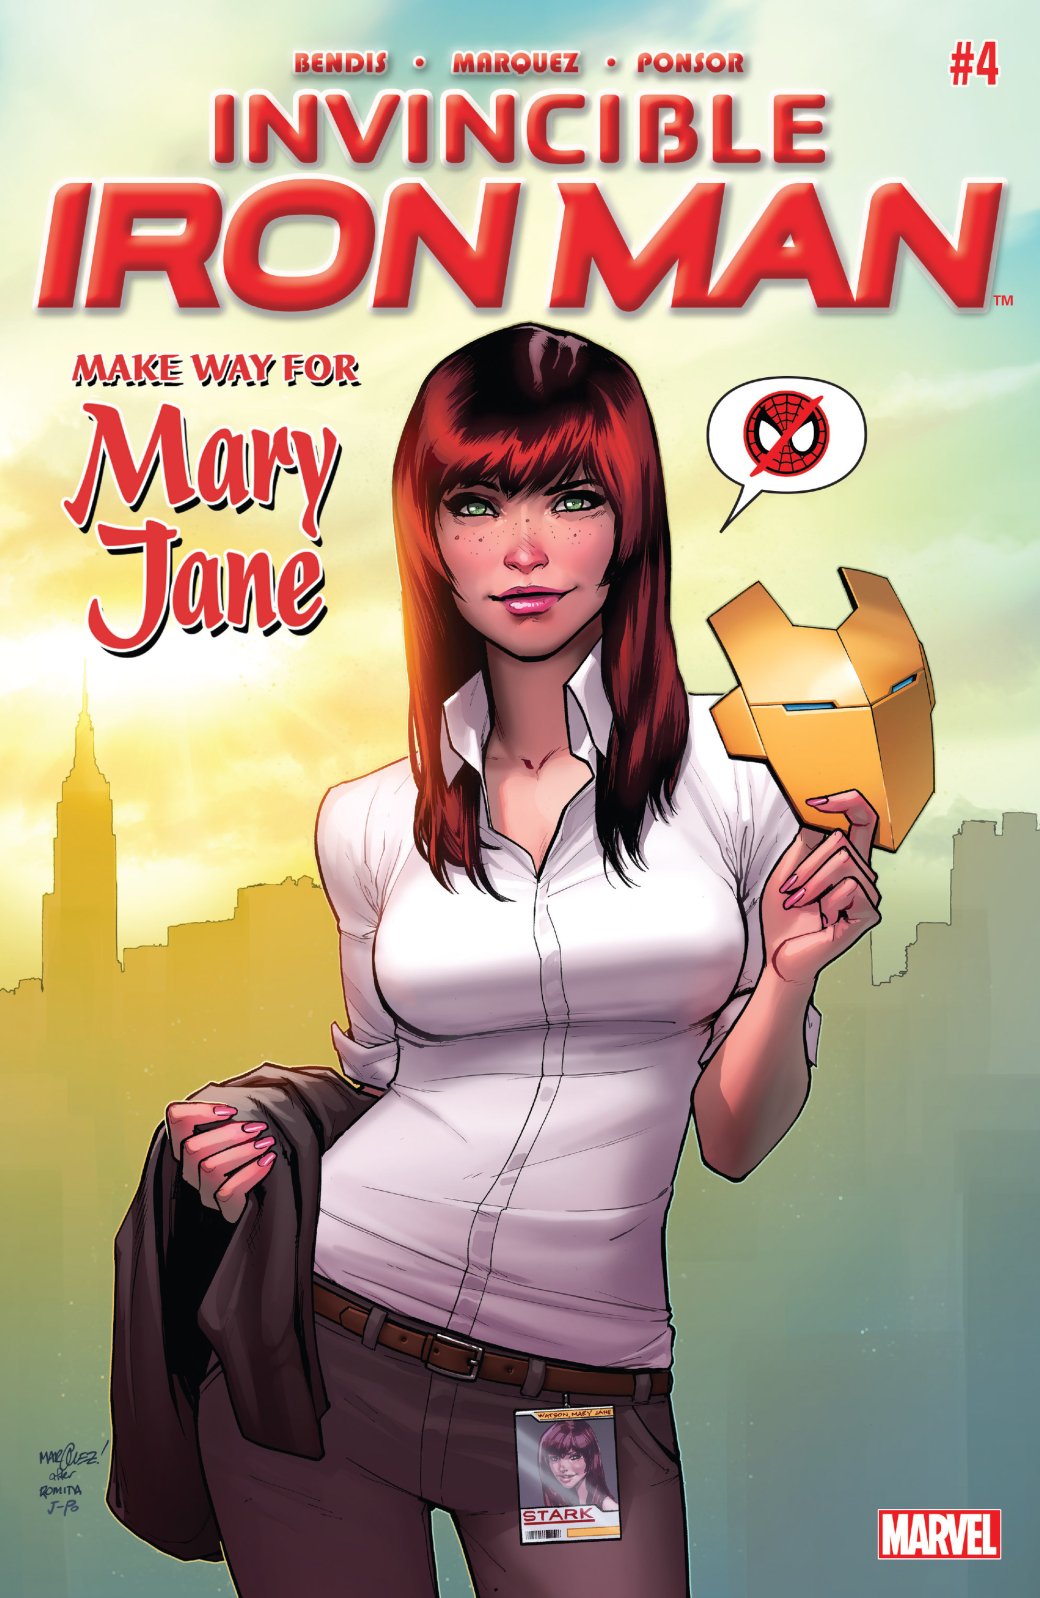 Мэри Джейн Уотсон — жена Человека-паука, модель, помощница Старка. Как менялся образ в комиксах? 